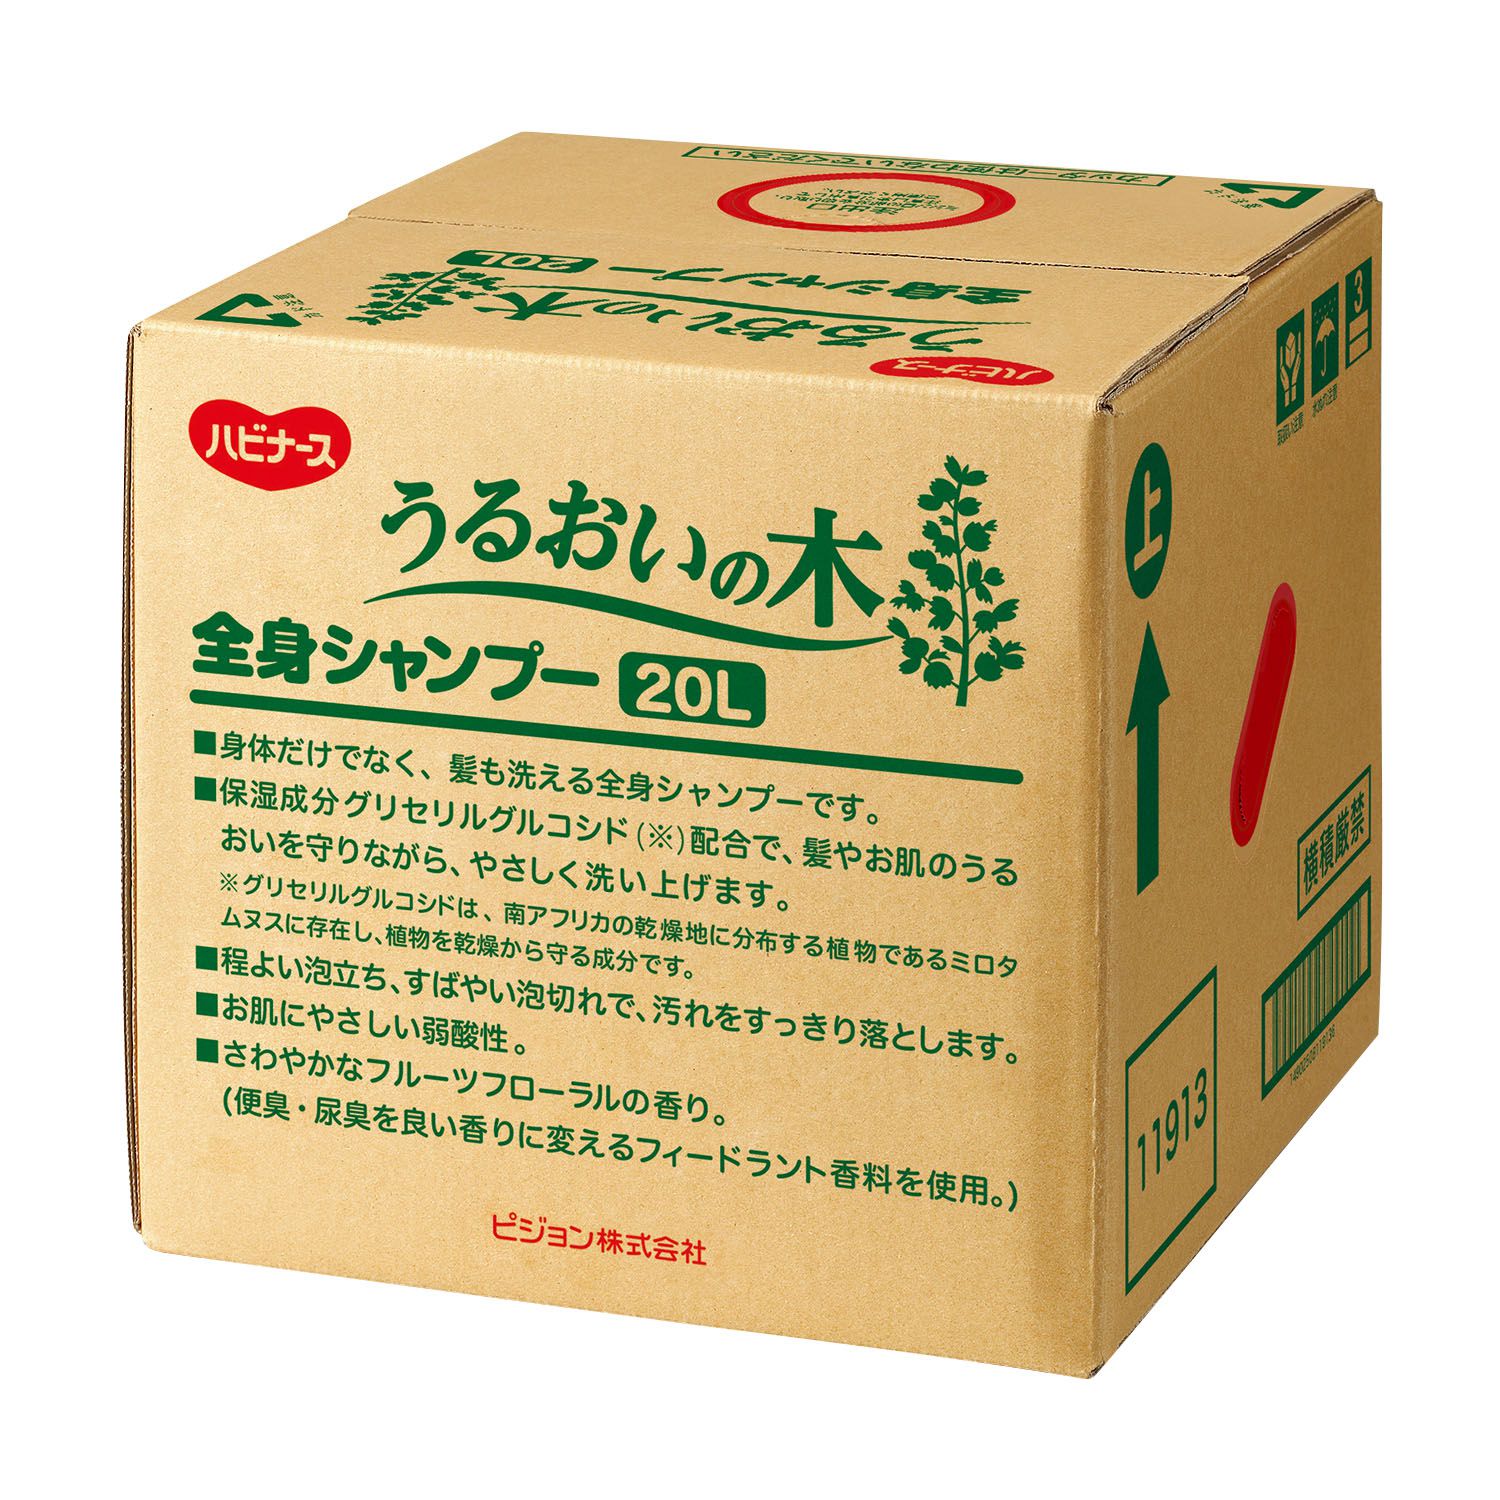 【大型配送】うるおいの木全身シャンプー 11189(20L)